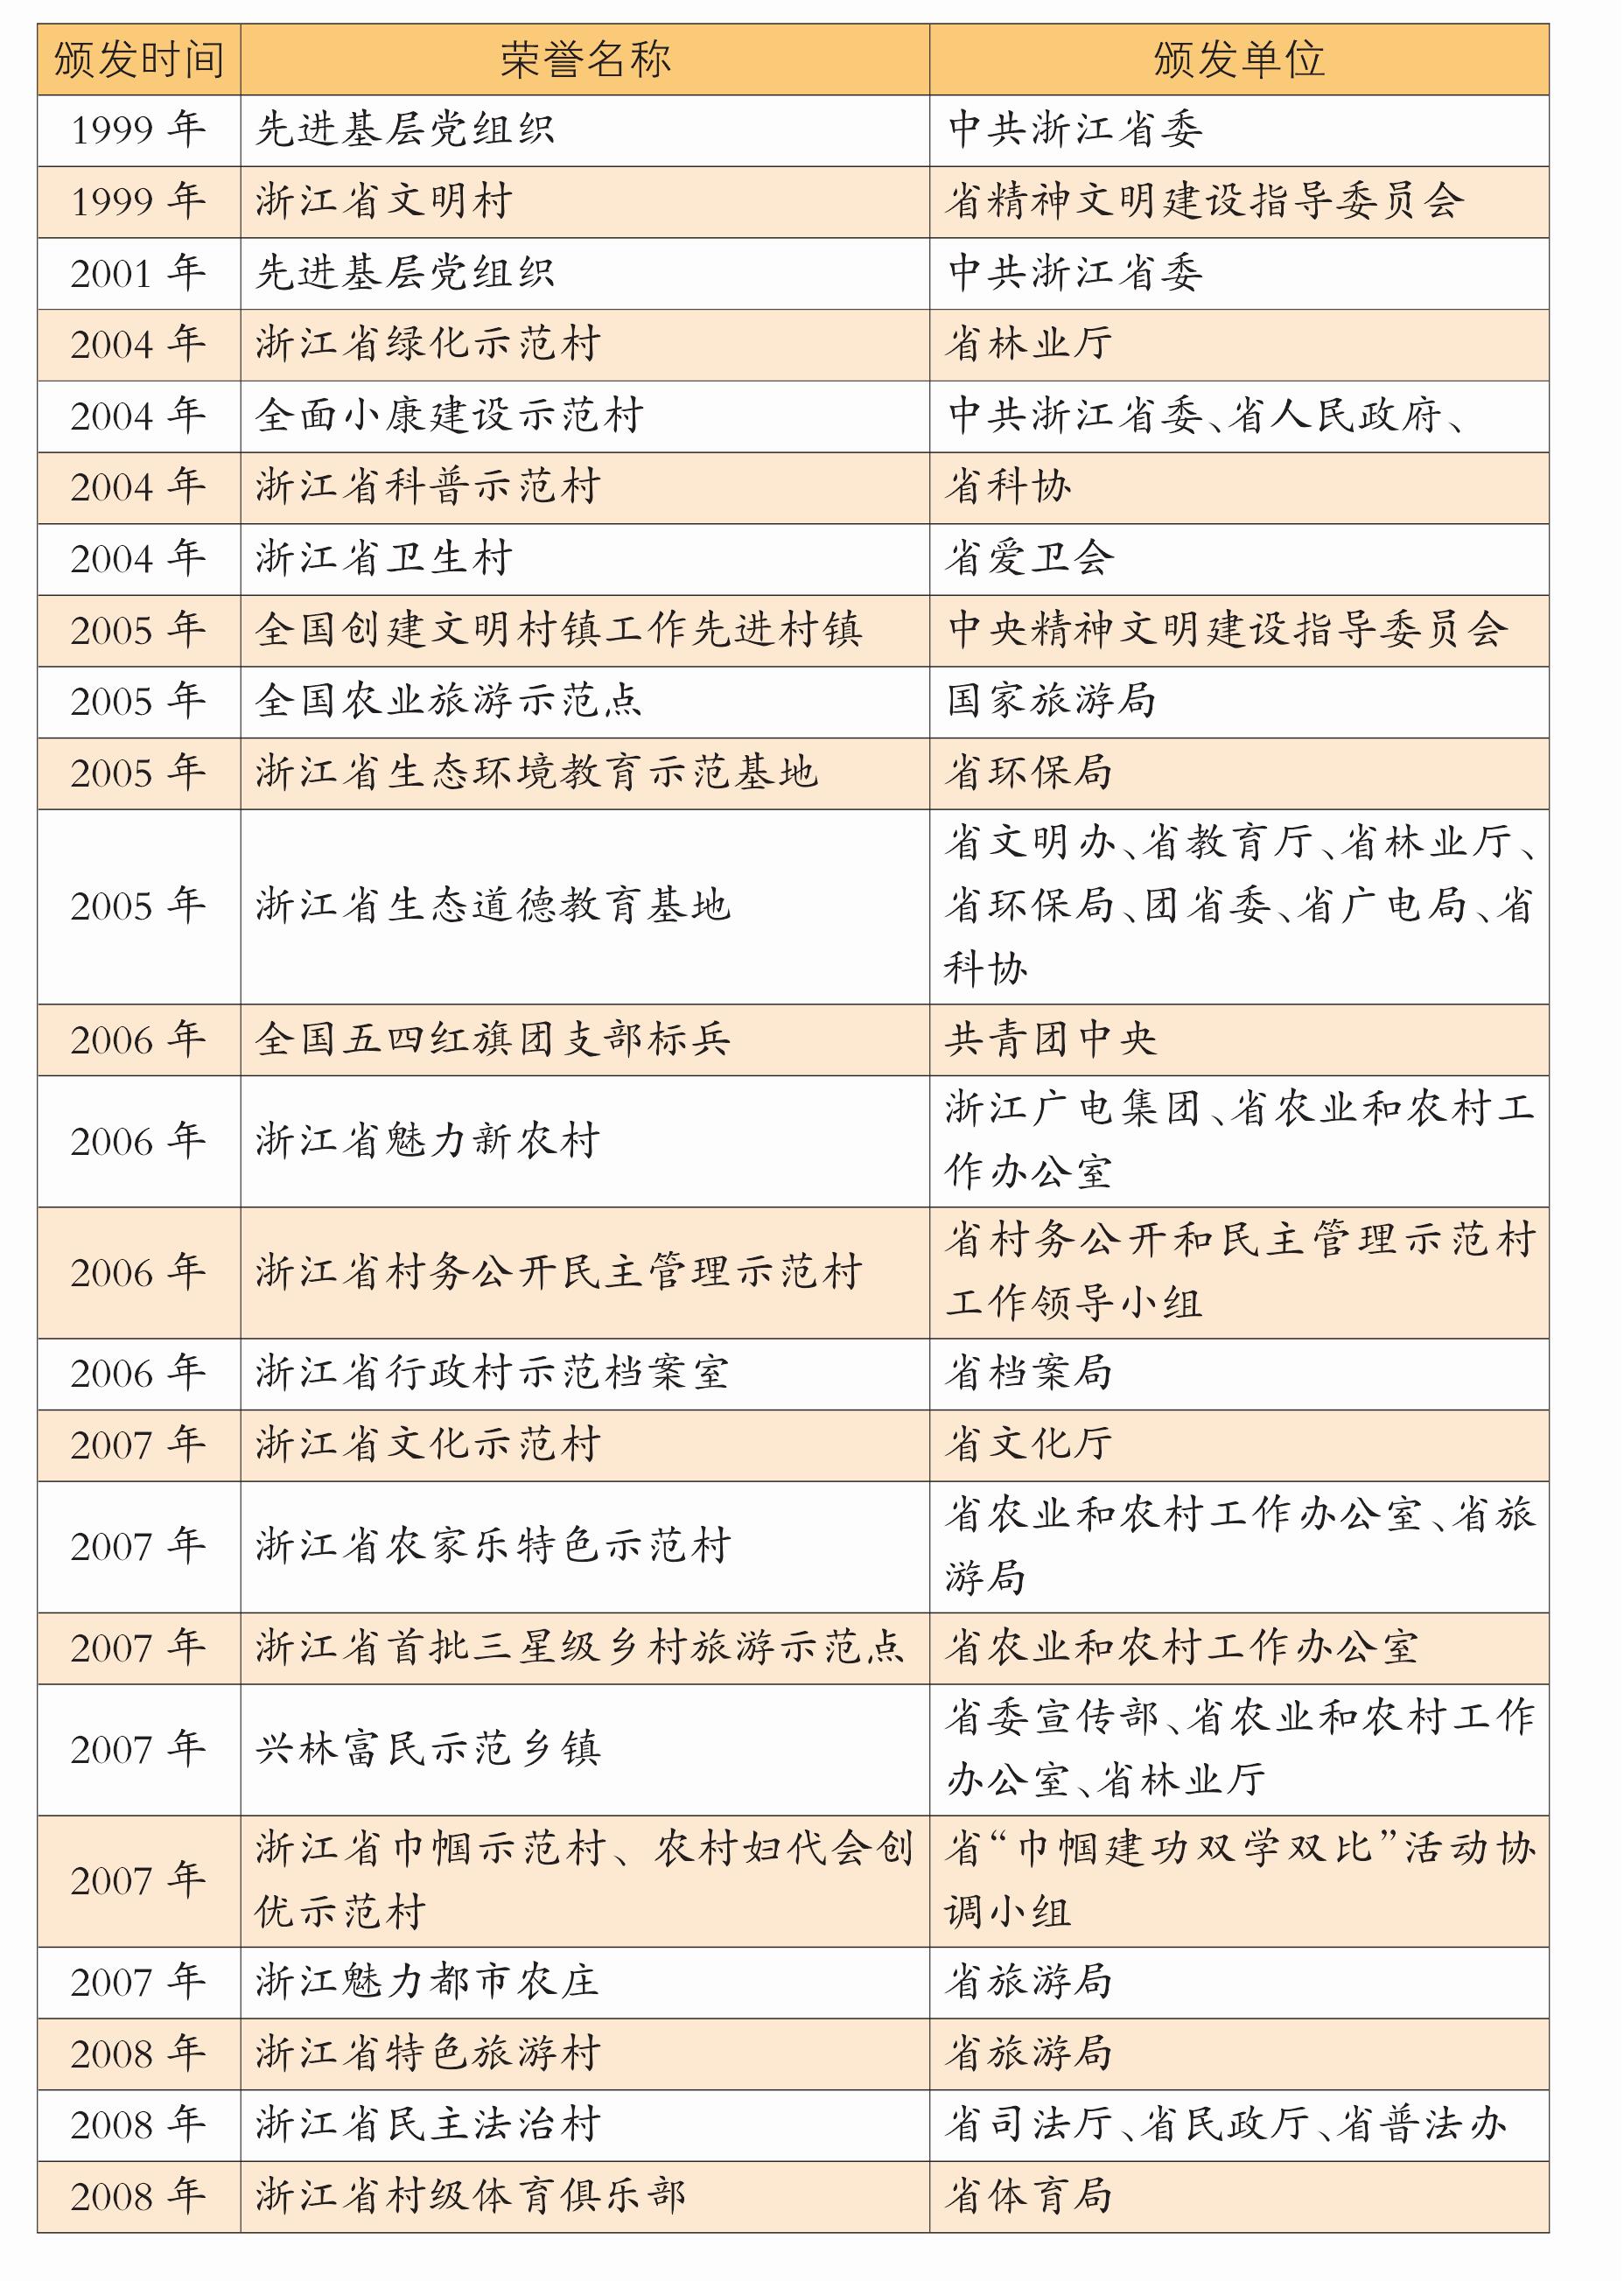 附表:湾底村省级、国家级荣誉一览表(1999—2016)